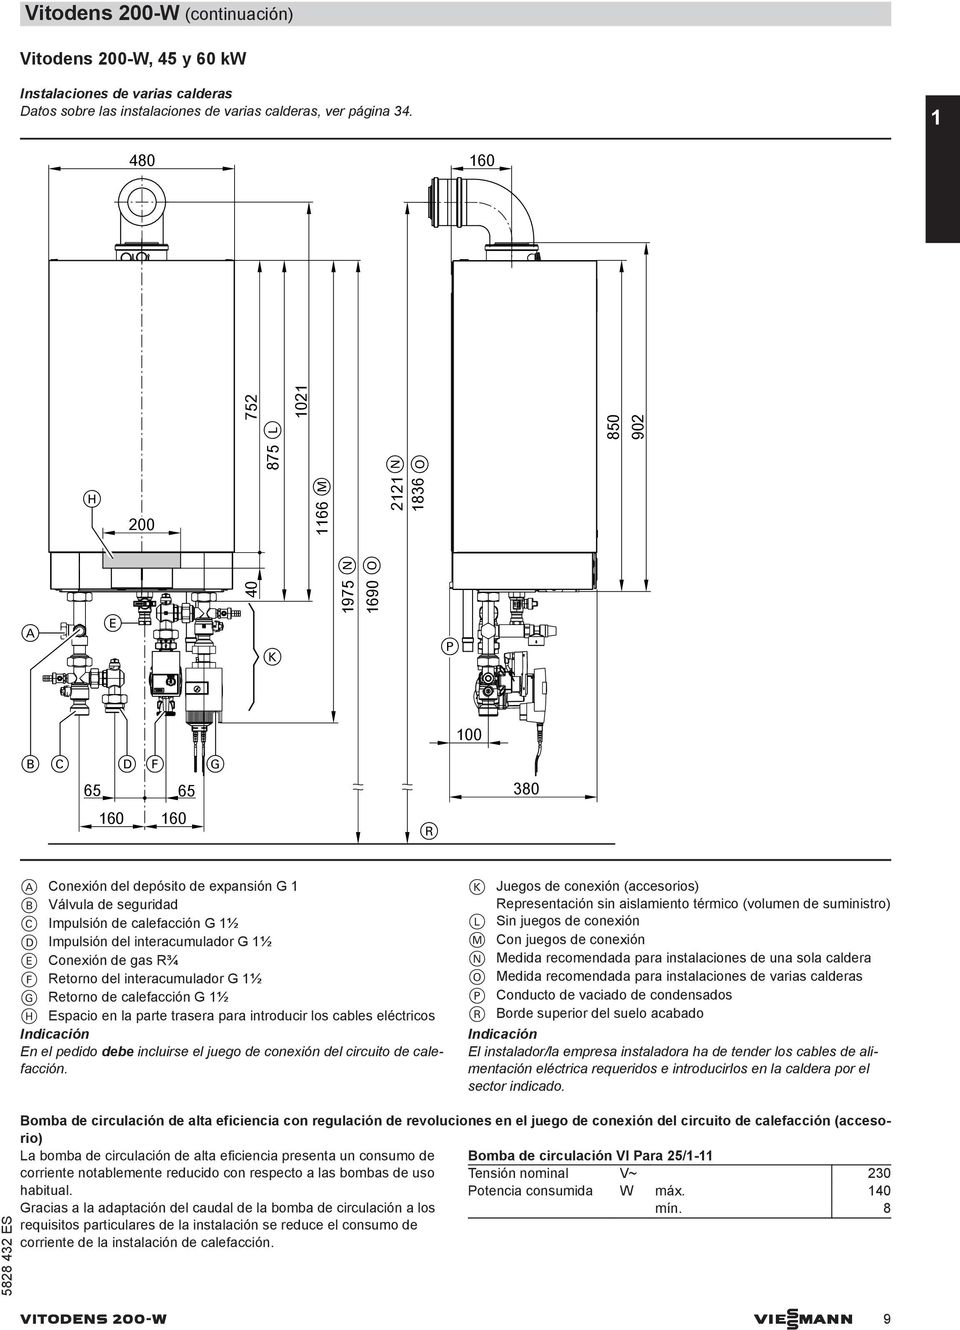 calefacción G 1½ D Impulsión del interacumulador G 1½ E Conexión de gas R¾ F Retorno del interacumulador G 1½ G Retorno de calefacción G 1½ H Espacio en la parte trasera para introducir los cables